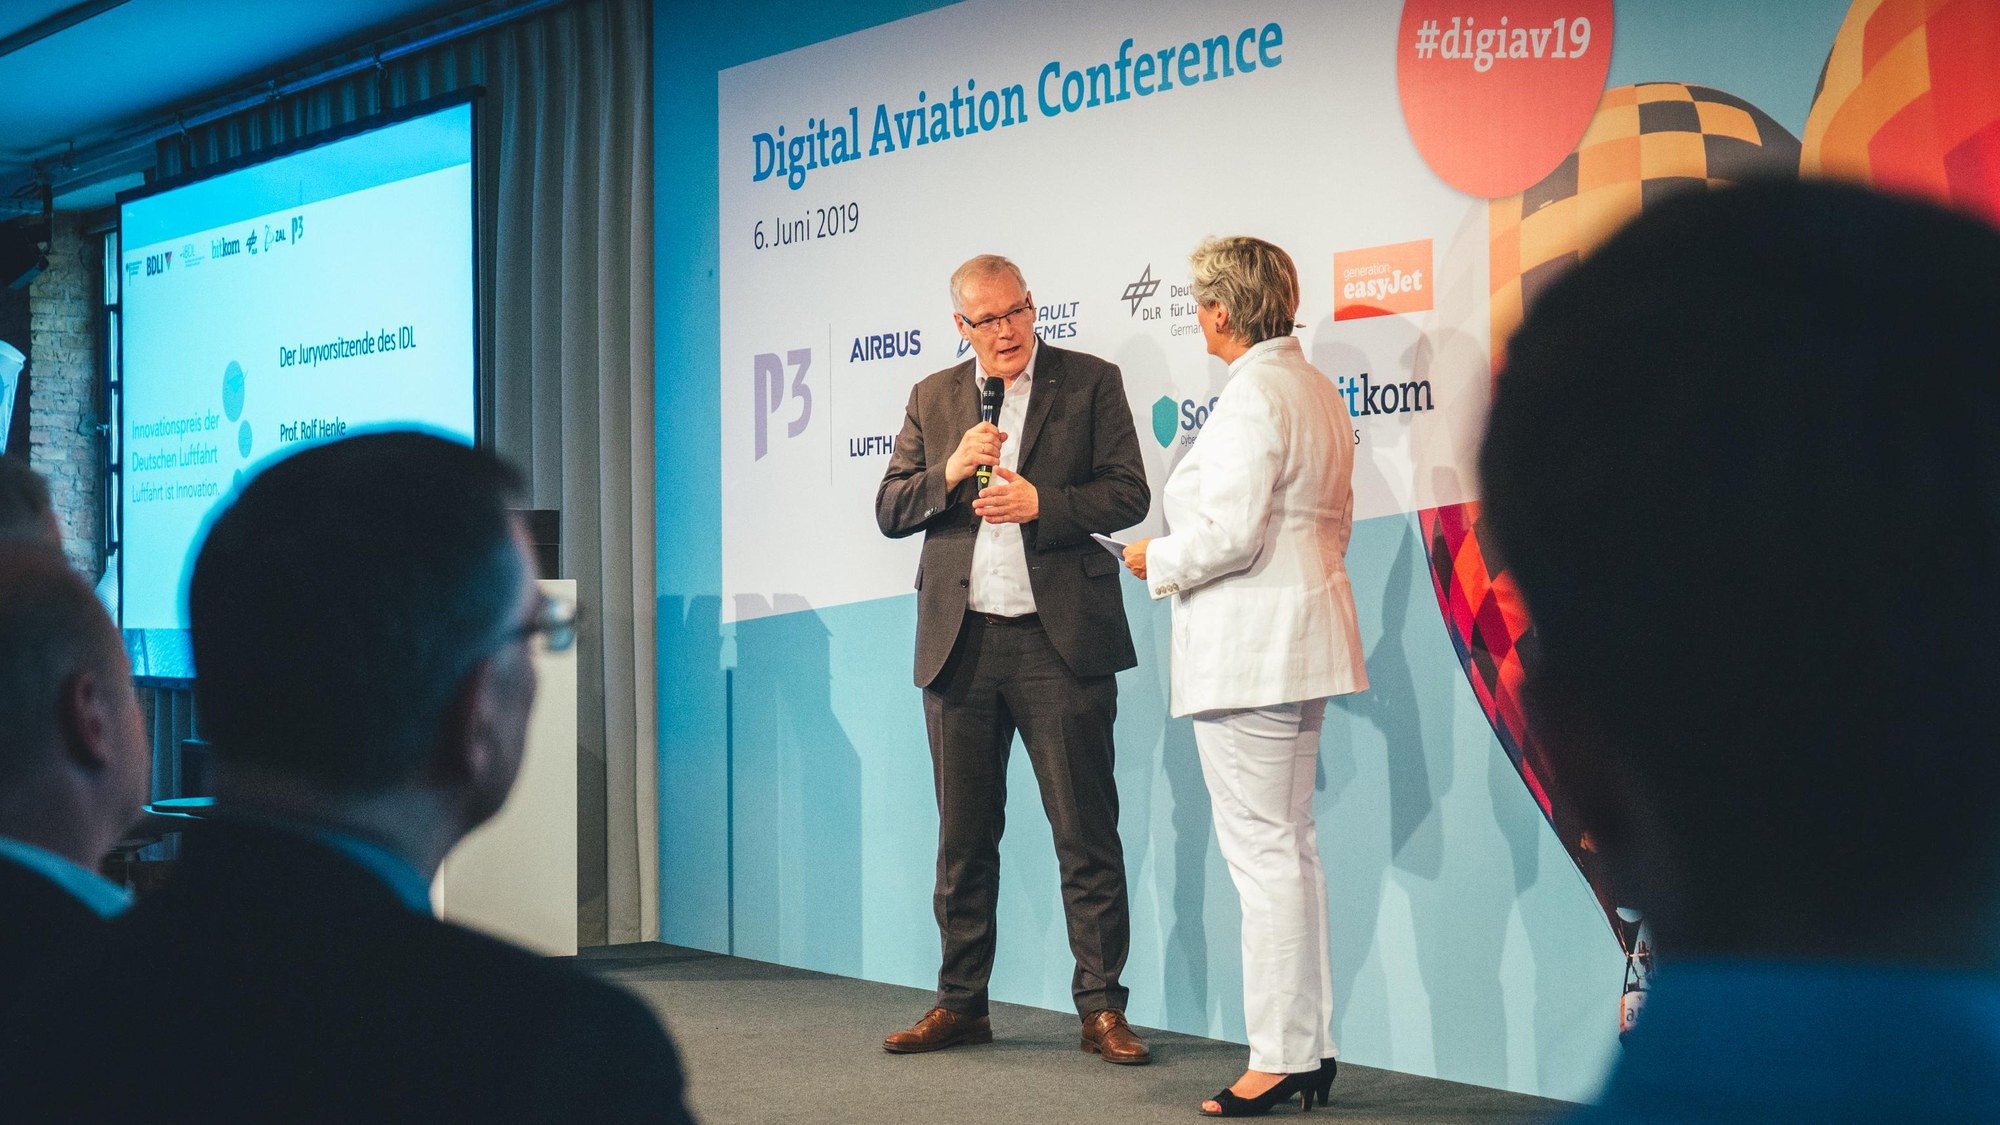 Eröffnung der "Digital Aviation Conference" durch Prof. Rolf Henke